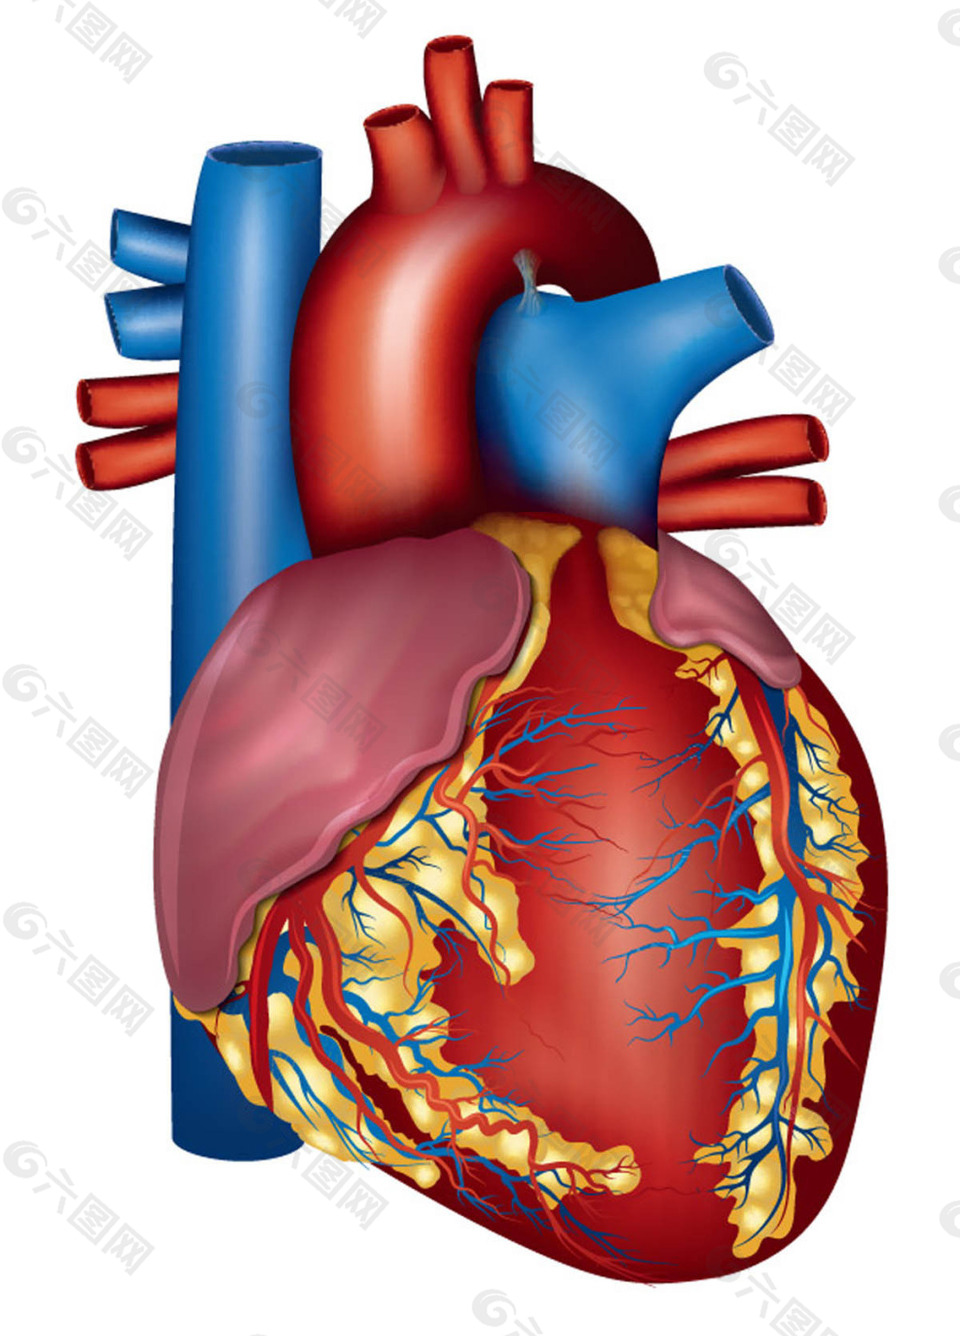 人体心脏器官设计平面广告素材免费下载(图片编号:7904688)